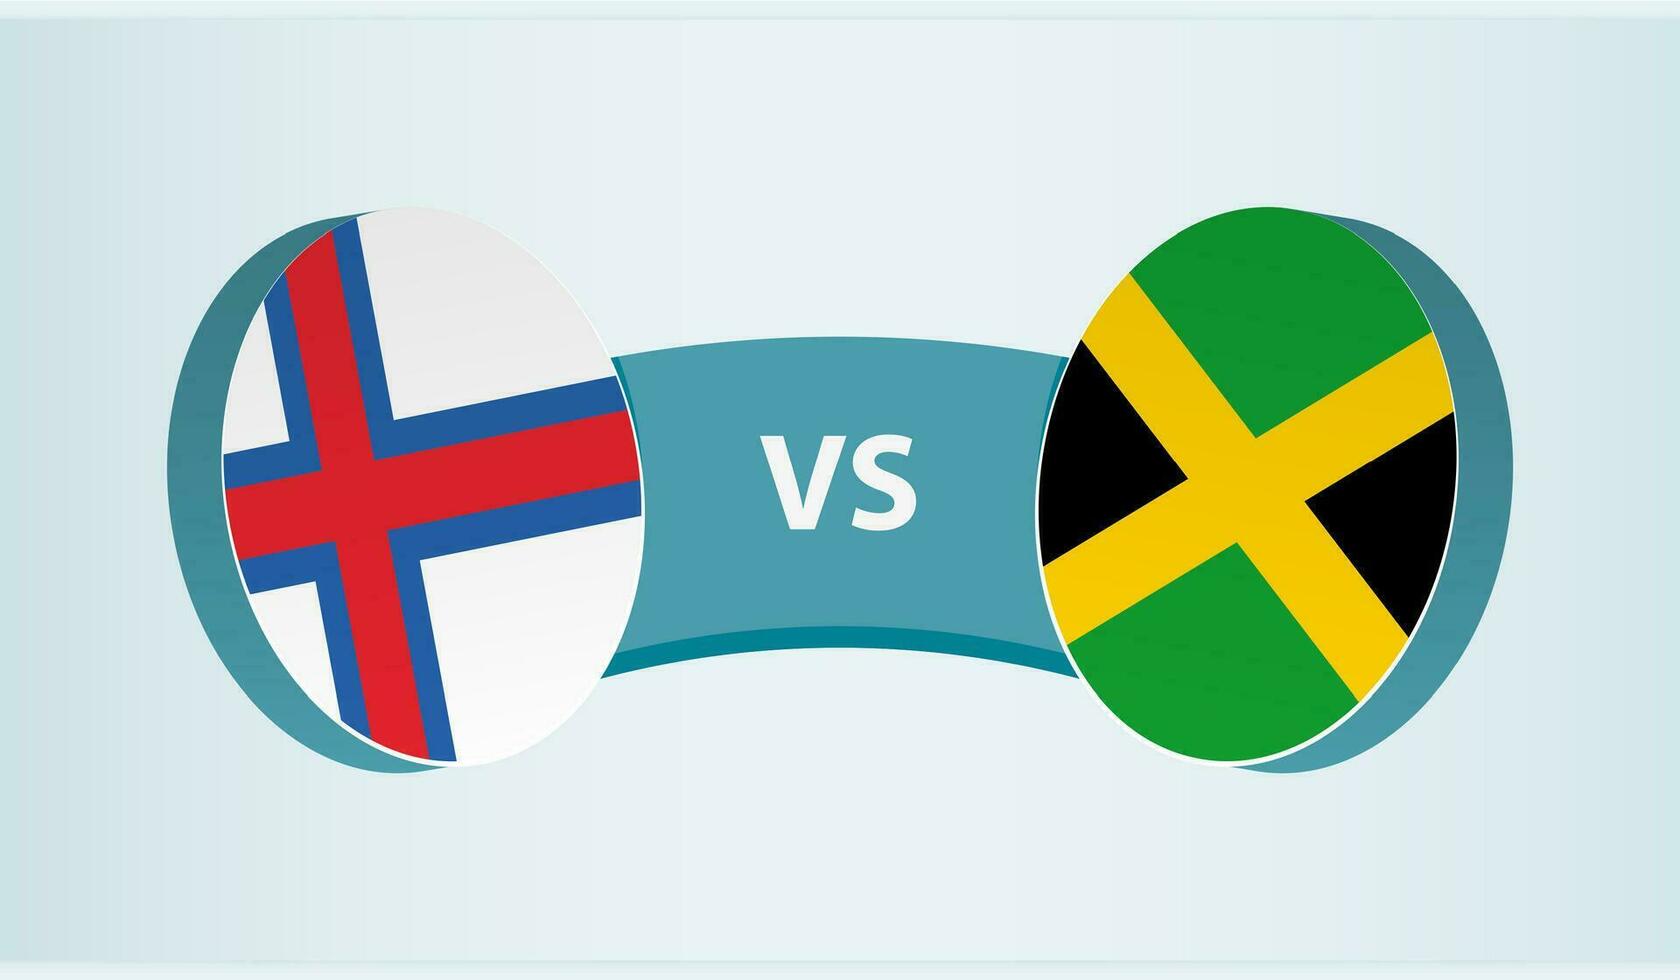 faroe öar mot jamaica, team sporter konkurrens begrepp. vektor